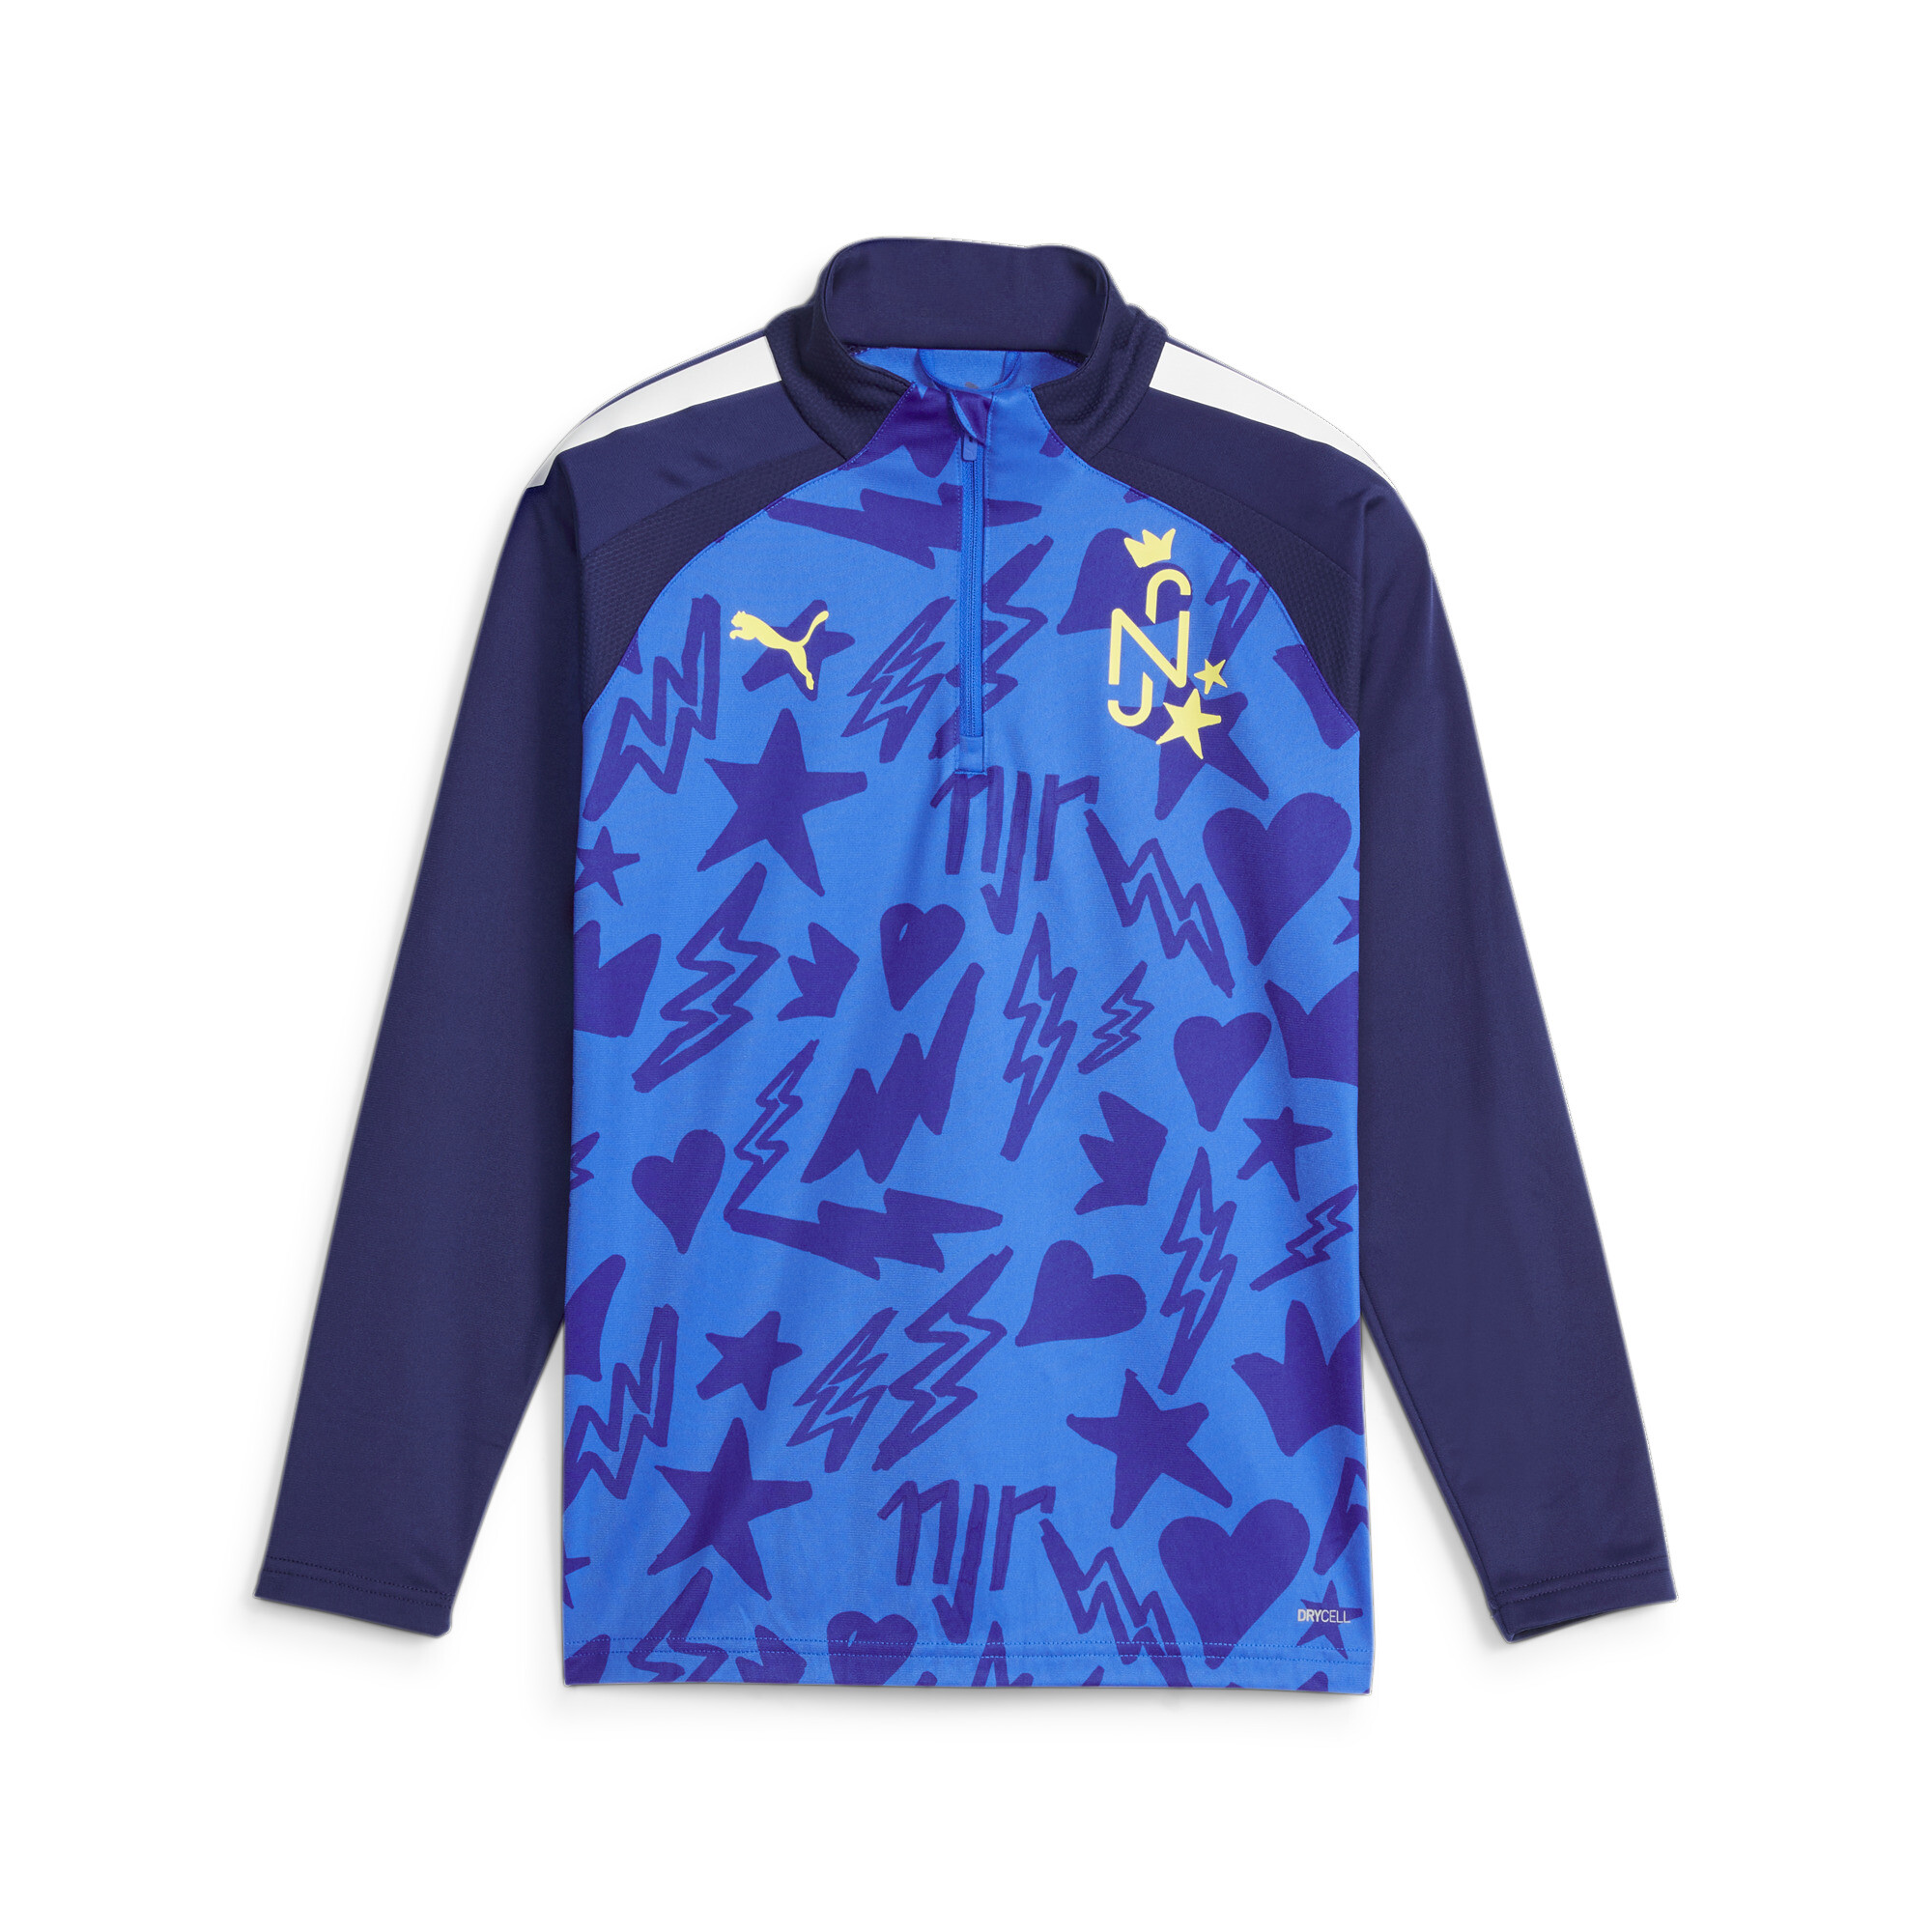 PUMA Neymar Jr Football Track Jacket In Blue, Size 9-10 Youth